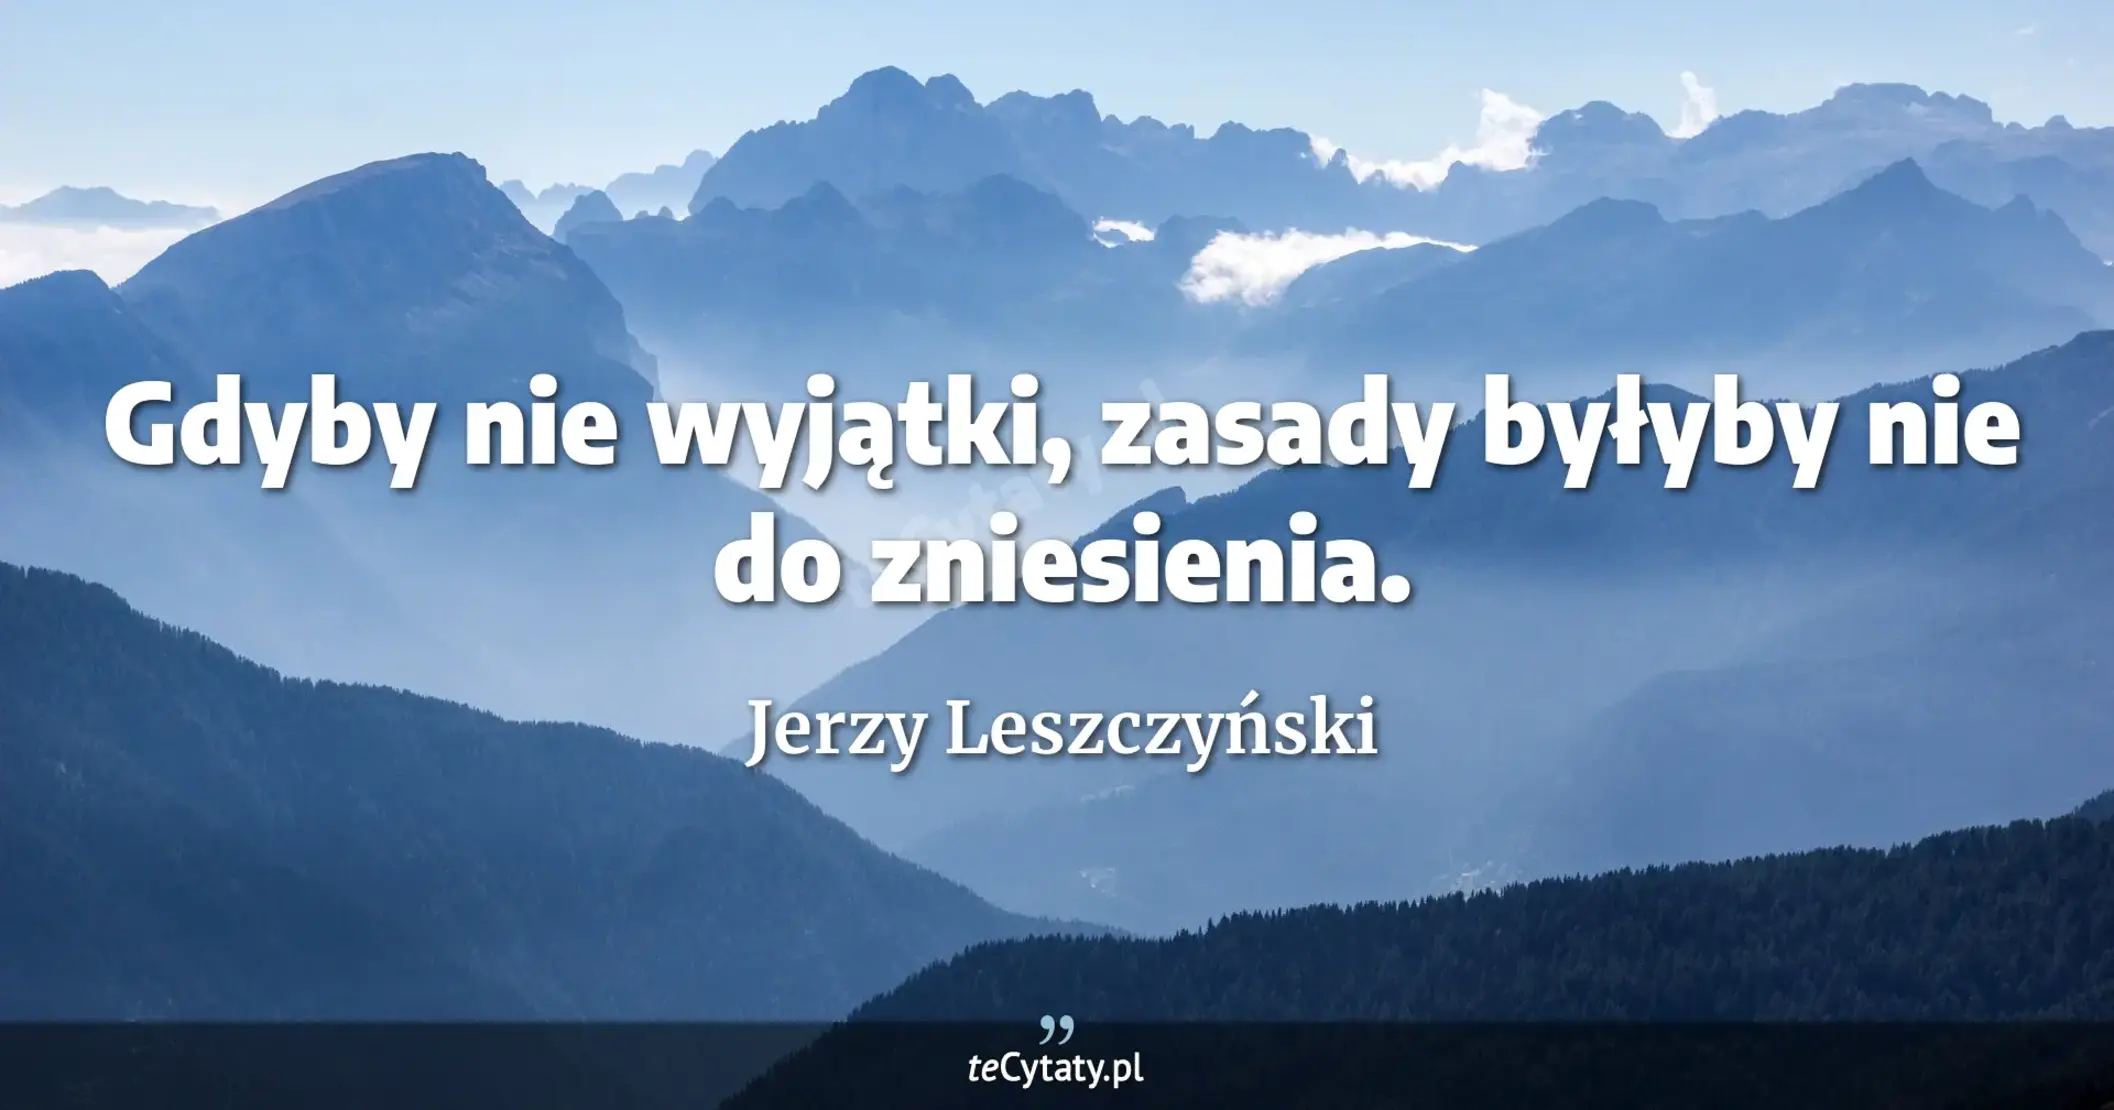 Gdyby nie wyjątki, zasady byłyby nie do zniesienia. - Jerzy Leszczyński